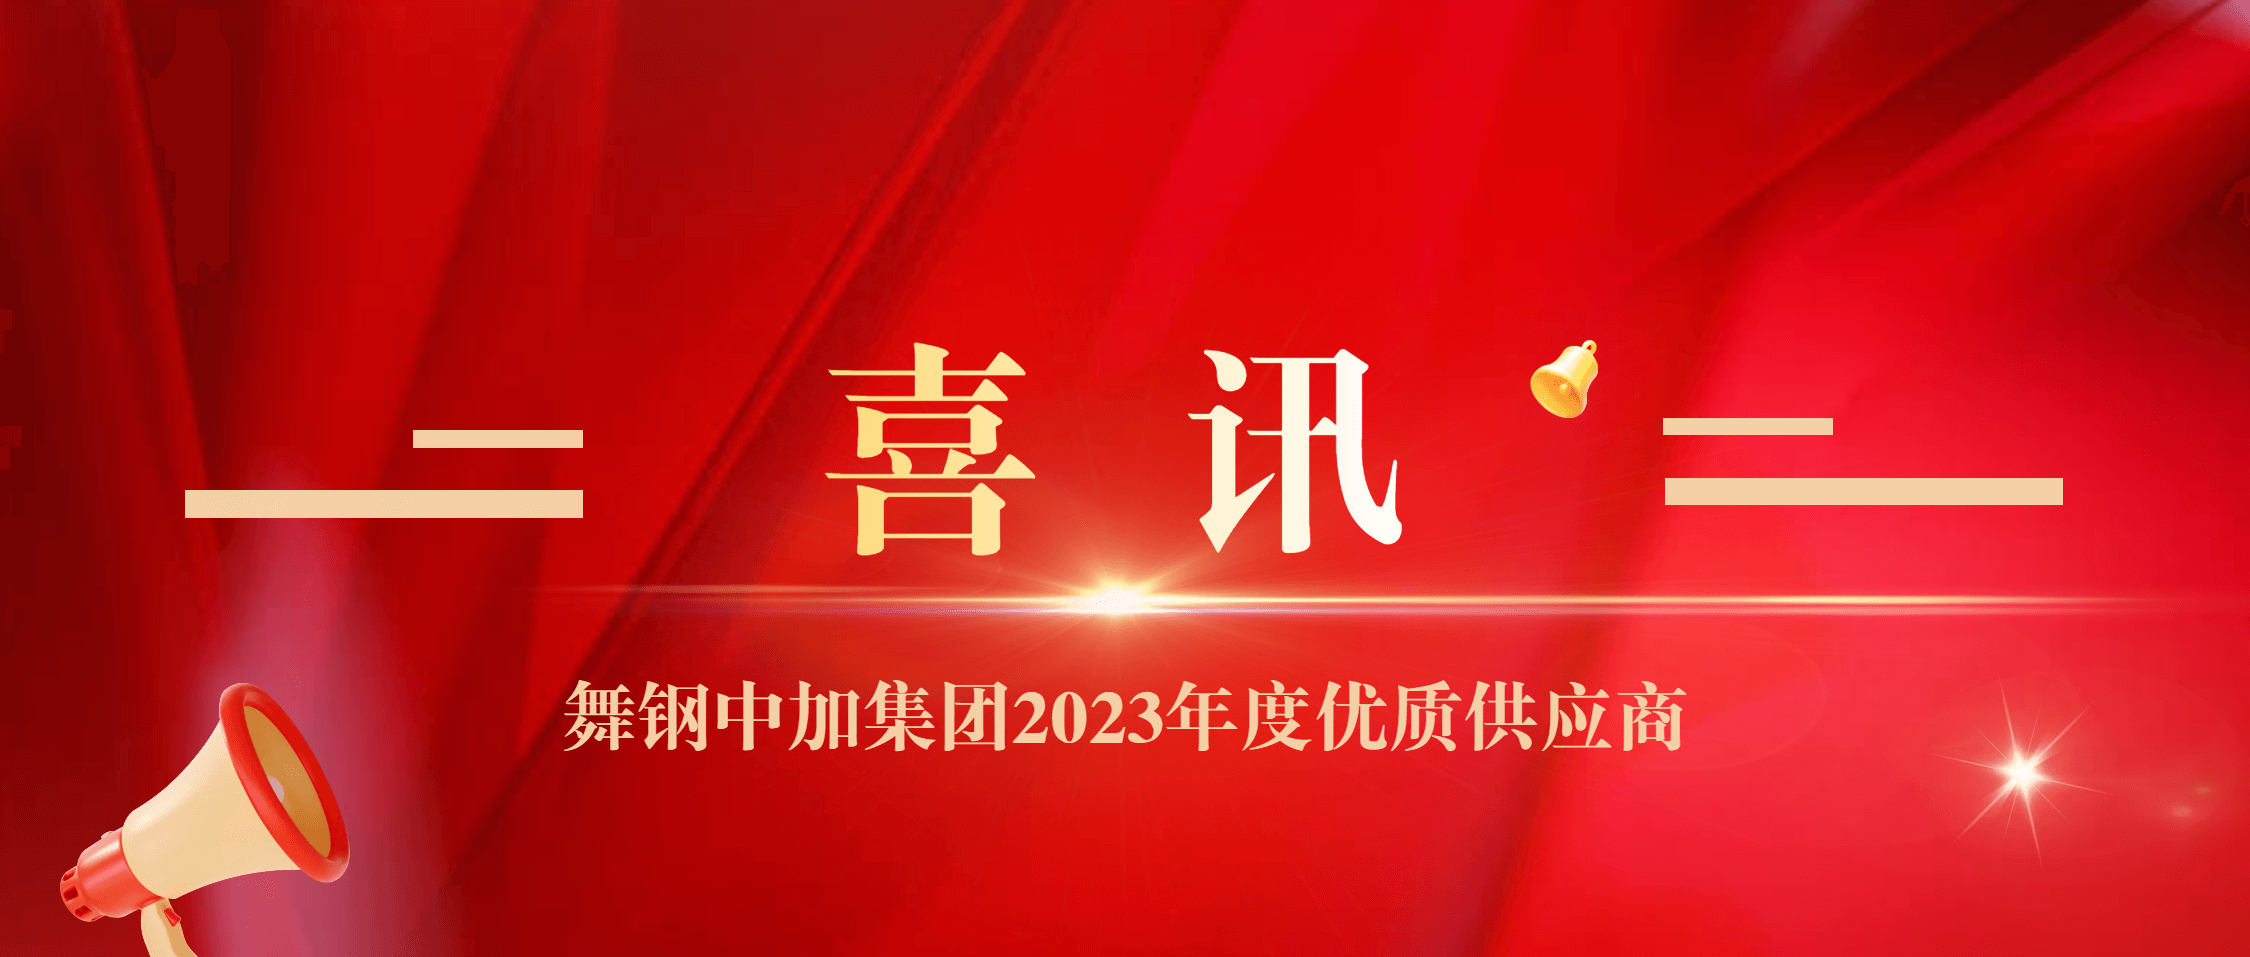 尊龙凯时集团荣获舞钢中加集团“2023年度优质供应商”称号